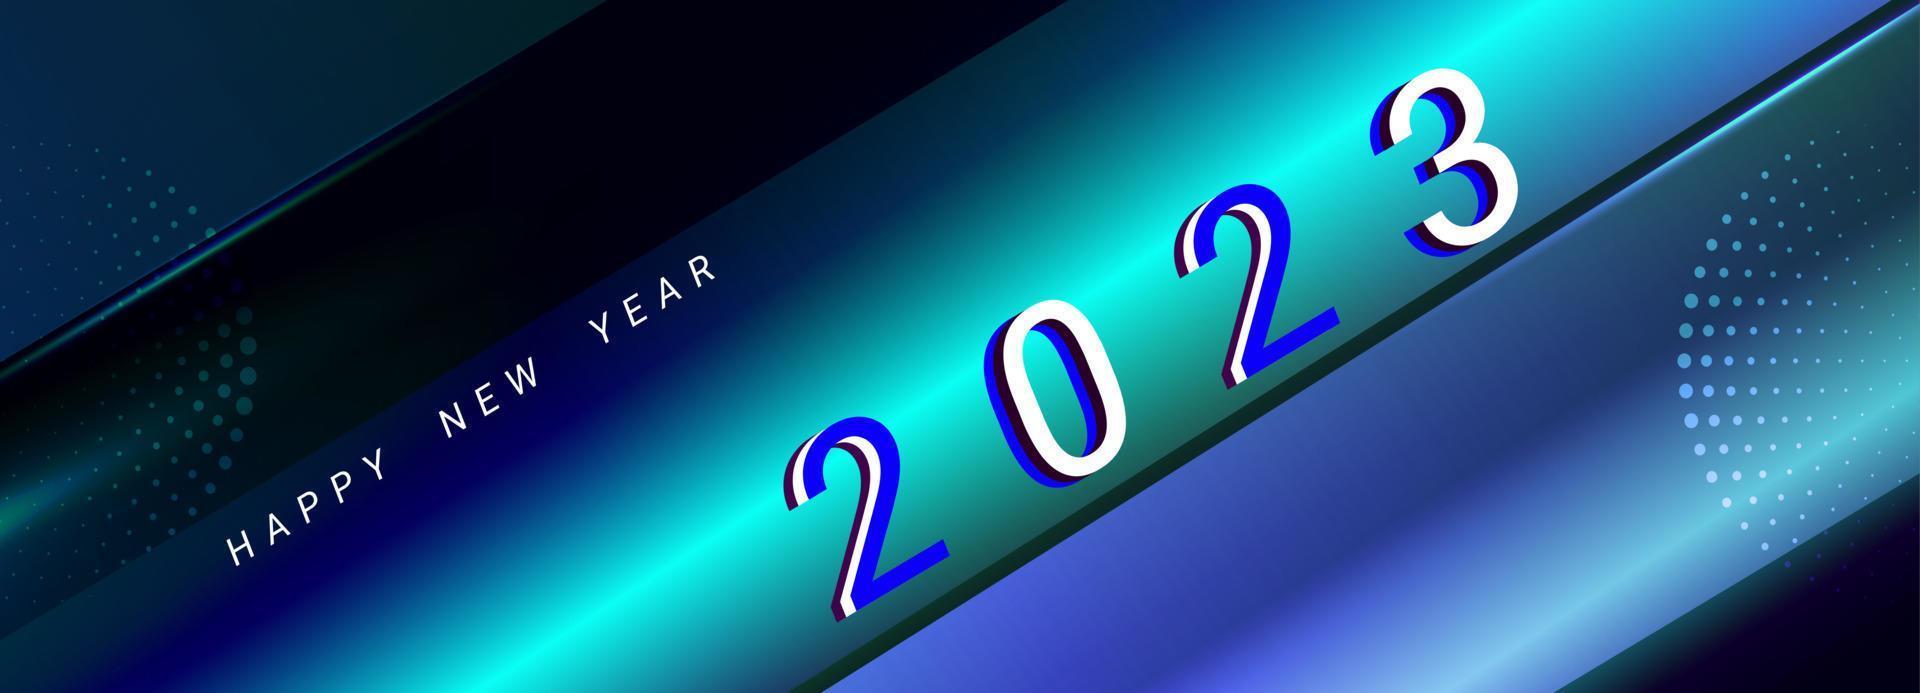 Hintergrund 2023 Neujahr Vektor Illustration Design